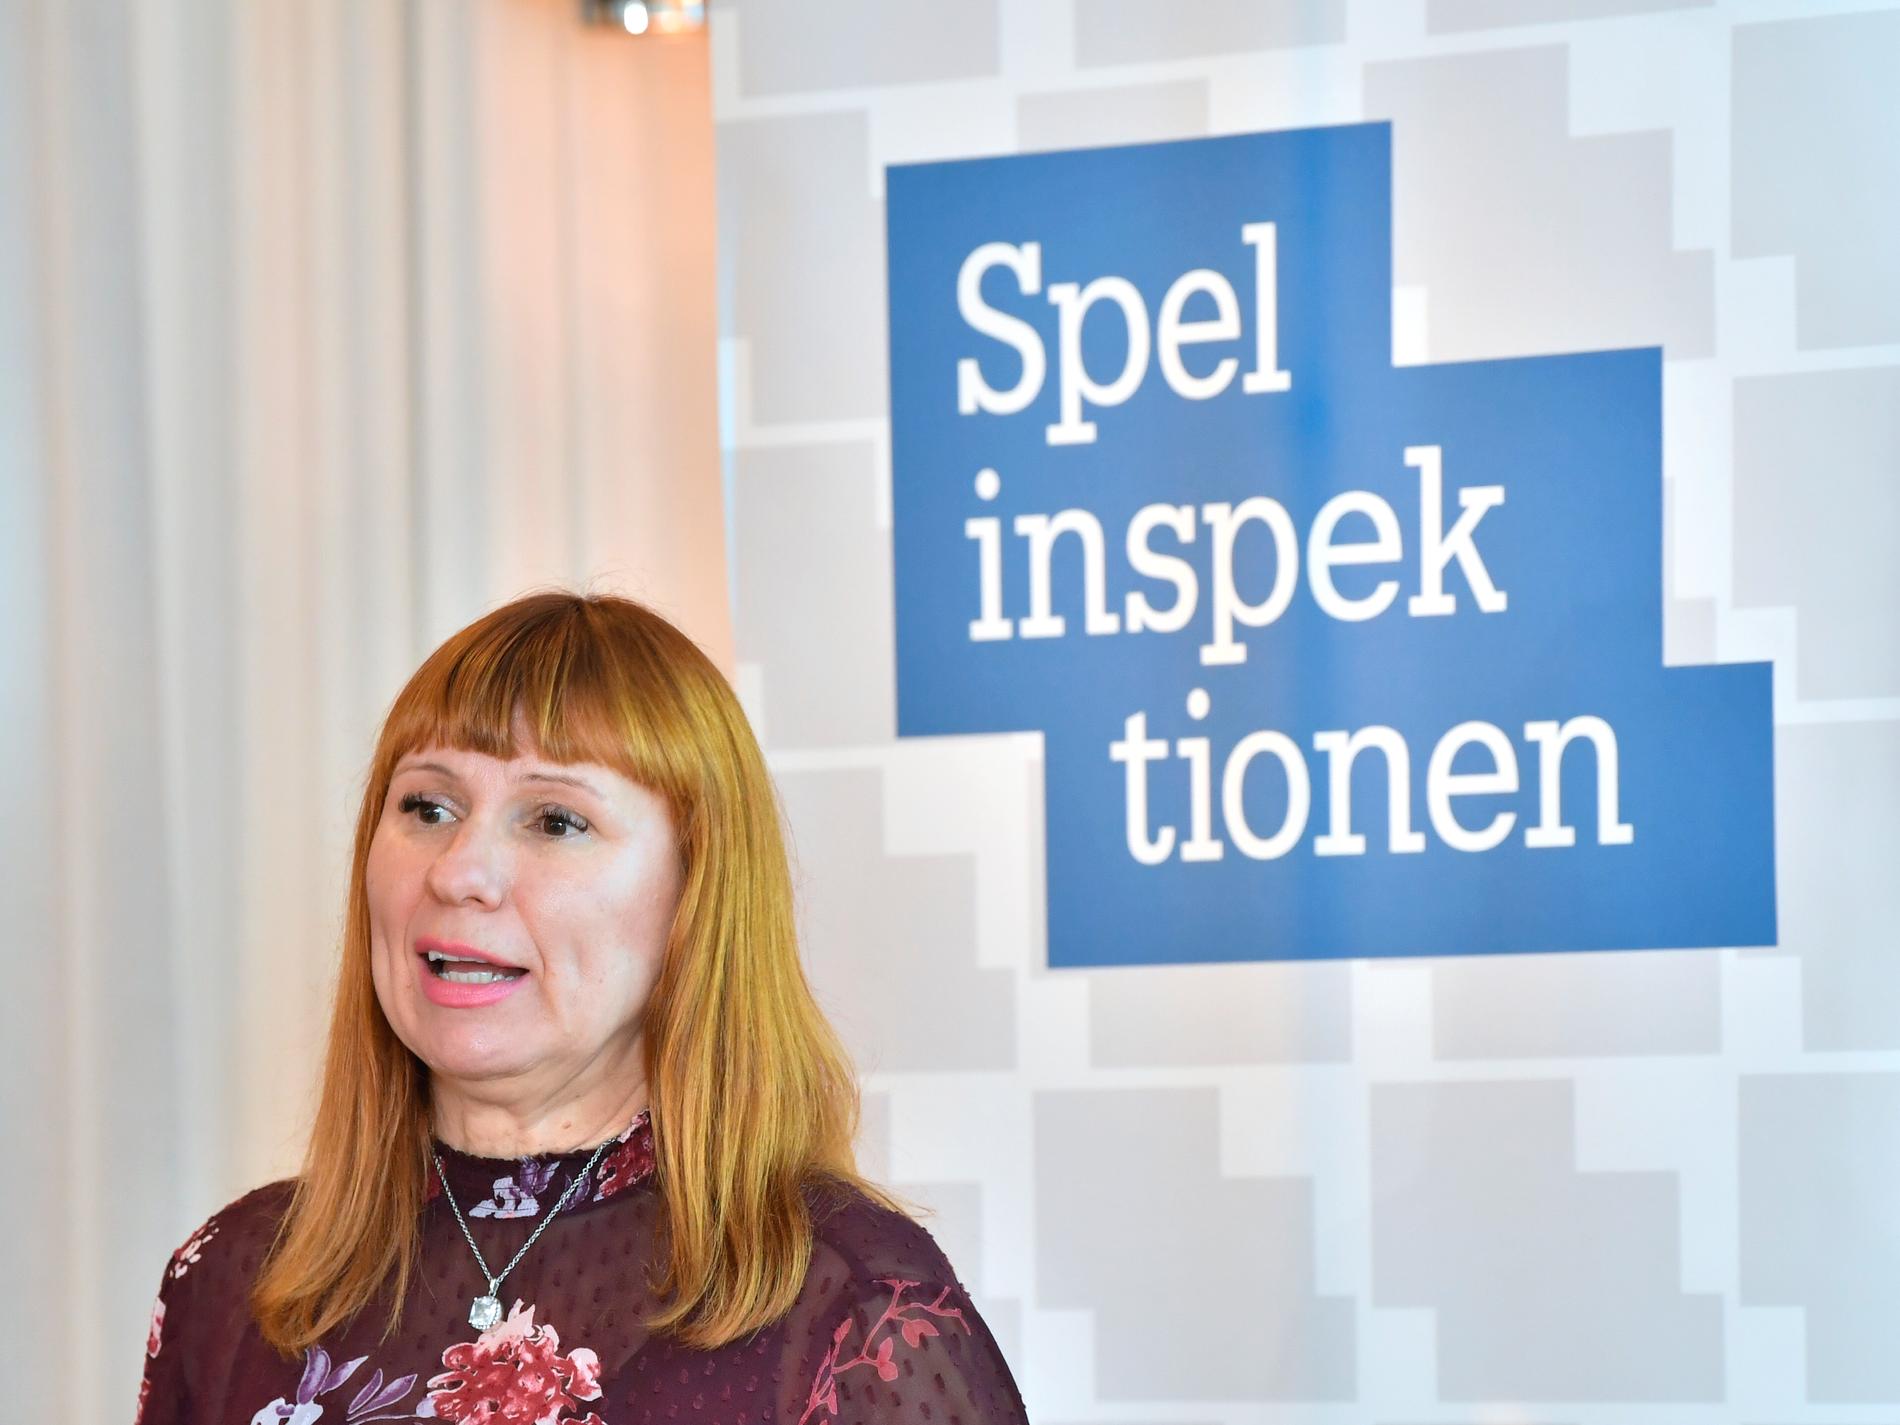 Camilla Rosenberg, Spelinspektionens generaldirektör på pressträffen där undersökningen om svenskarnas spelvanor presenteras.